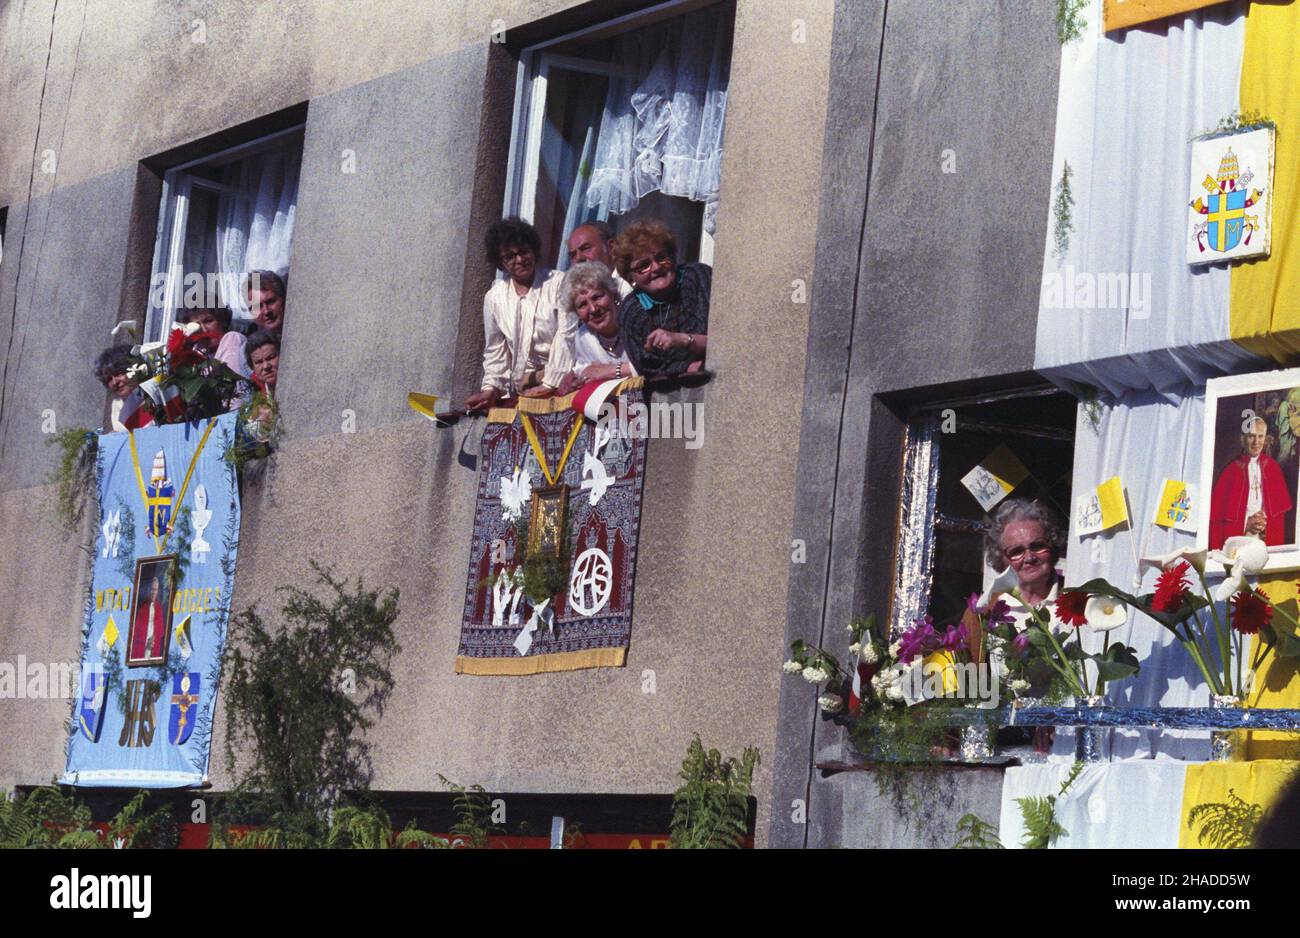 Przemyœl 02.06.1991. IV pielgrzymka papie¿a Jana Paw³a II do Polski. Nz. Nz. odœwiêtnie udekorowane budynki. mw  PAP/Grzegorz Rogiñski         Przemysl, 2 June 1991. Pope John Paul II's fourth pilgrimage to Poland. Pictured: buildings decorated for the pope's visit.  mw  PAP/Grzegorz Roginski Stock Photo